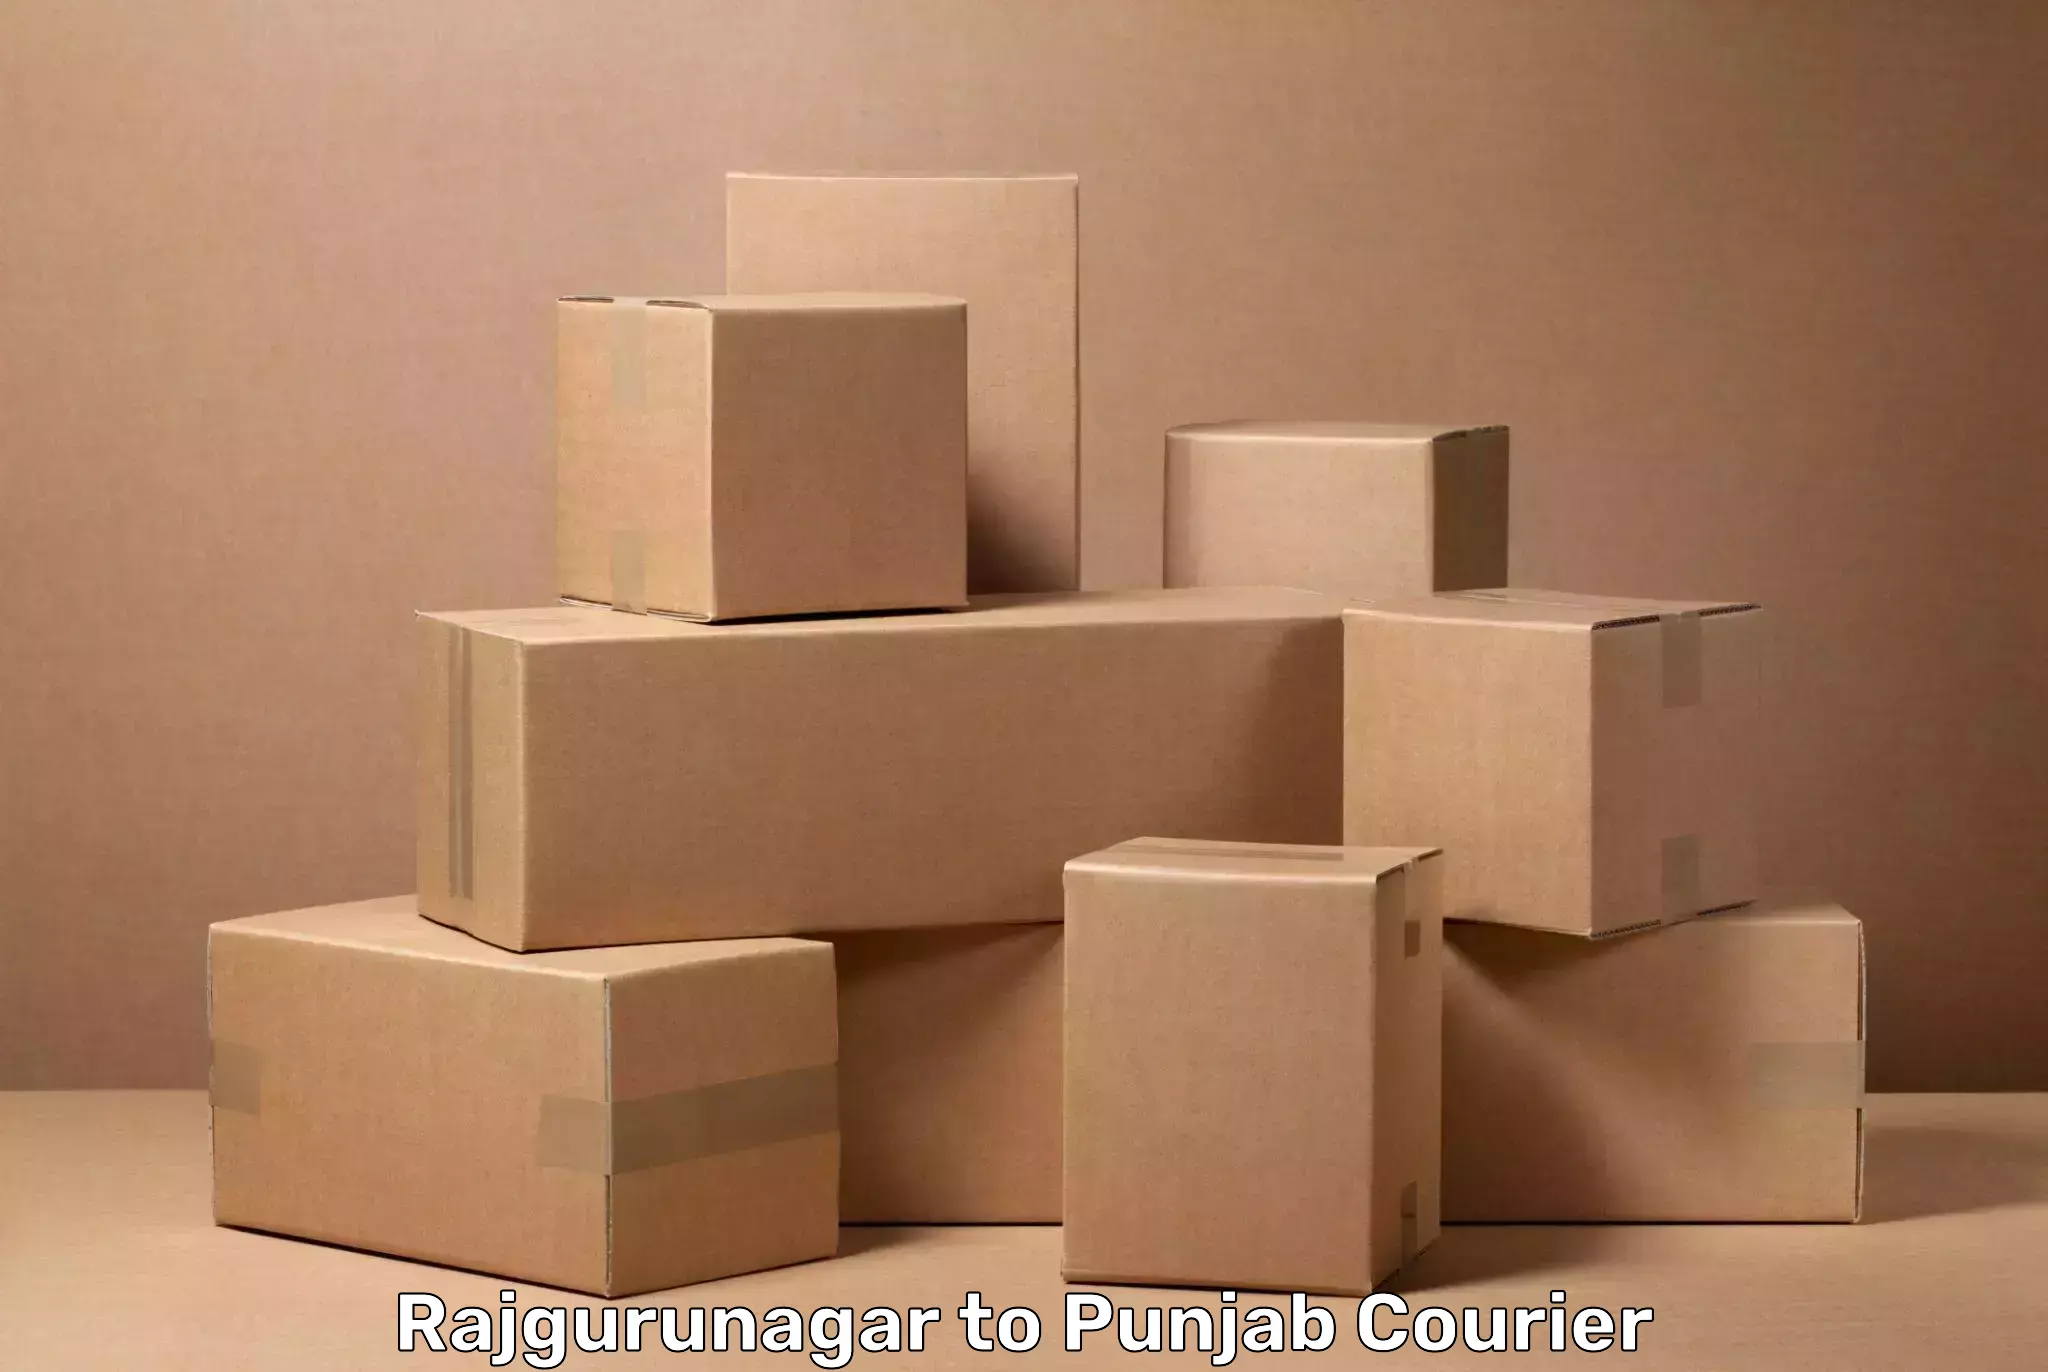 Baggage transport coordination Rajgurunagar to Punjab